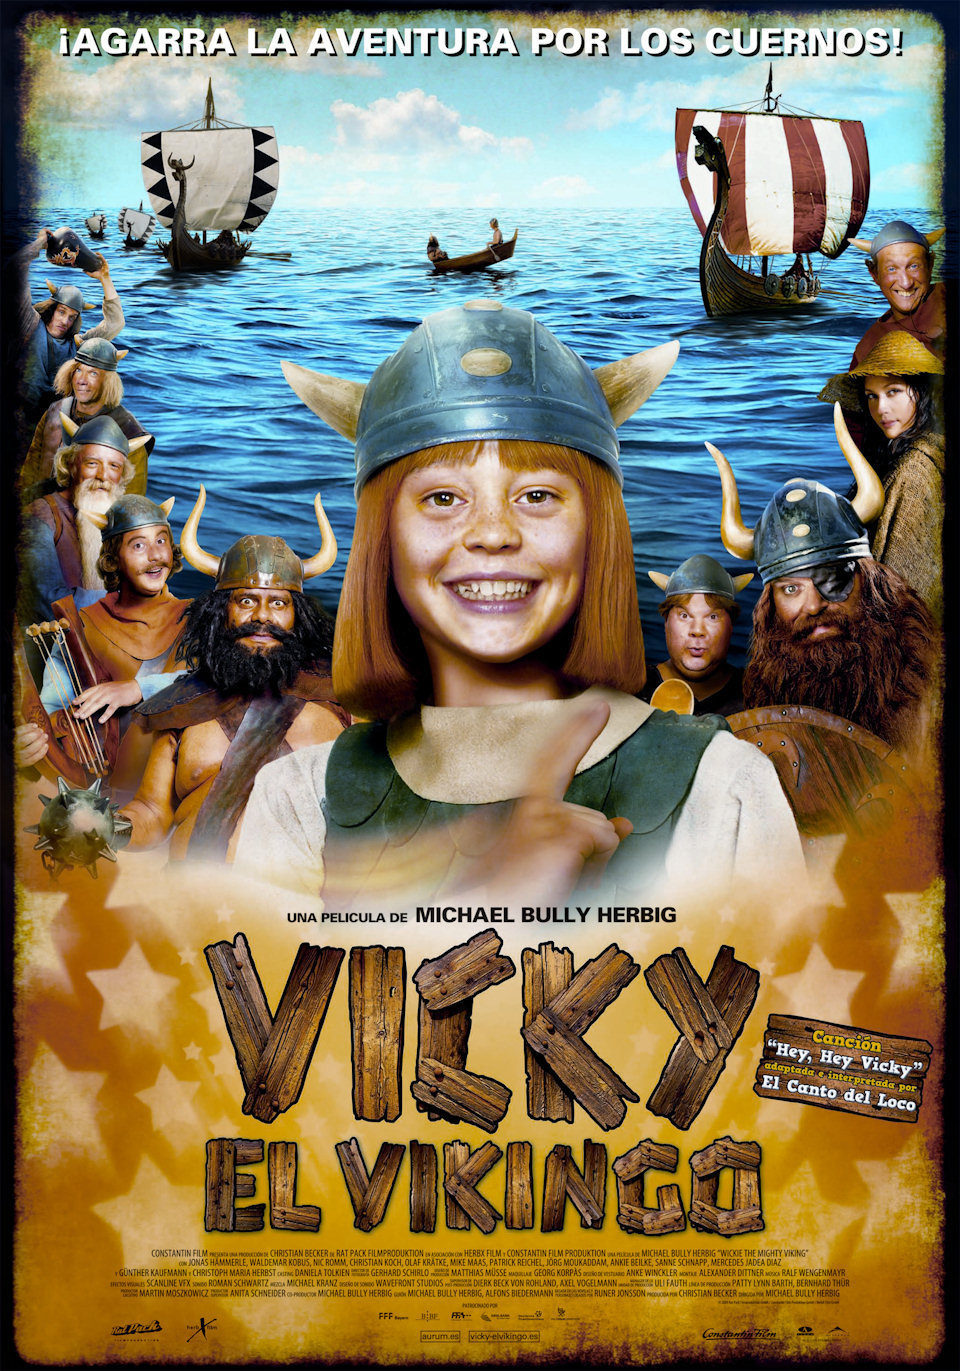 Cartel de Vicky el vikingo - España